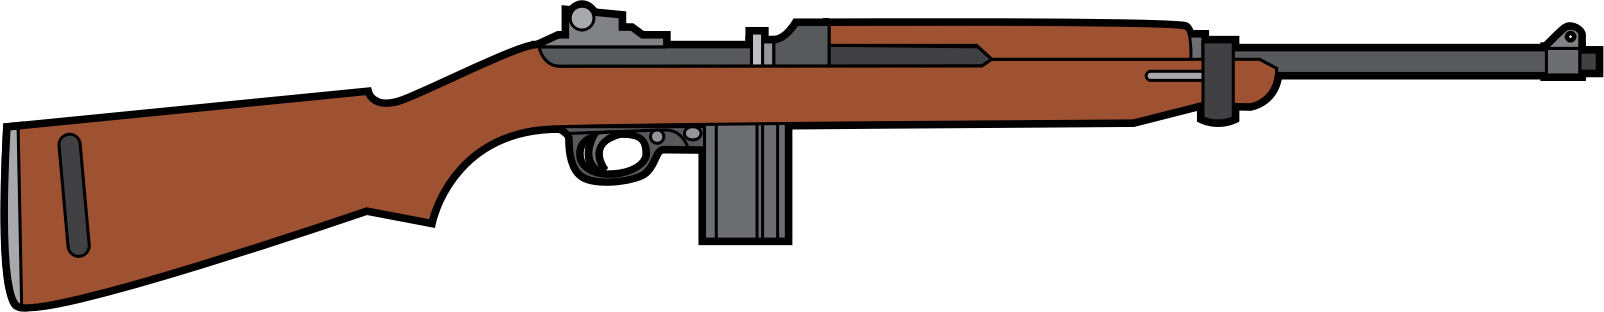 Rifle Clipart Transparent - Rifle Clipart Transparent (1748x340)